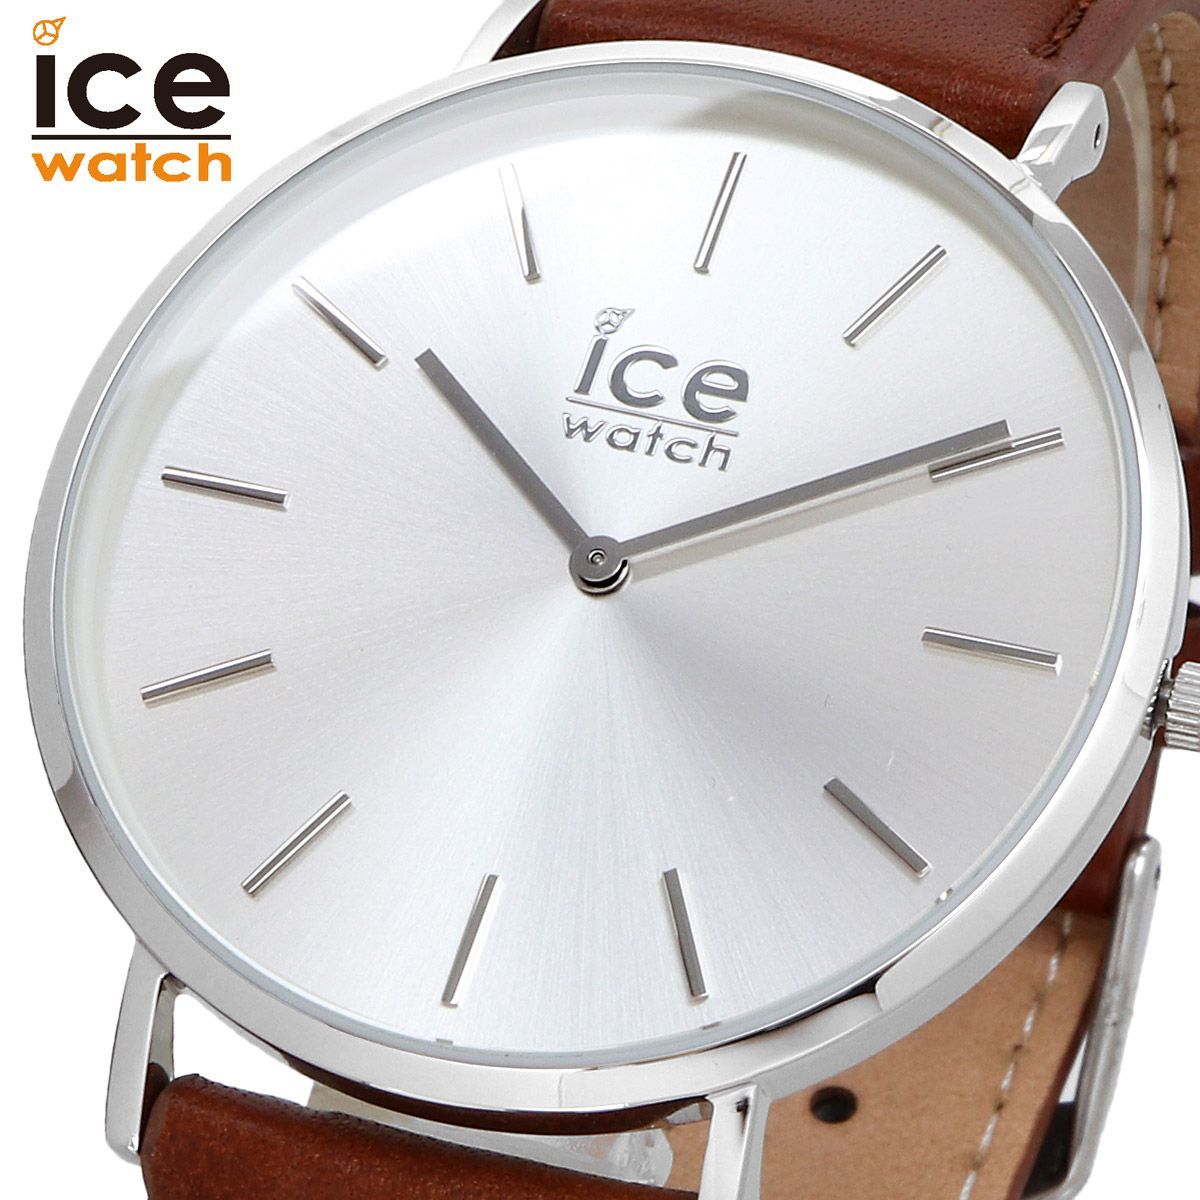 新品 未使用 アイス ウォッチ ice watch 人気 腕時計 016228